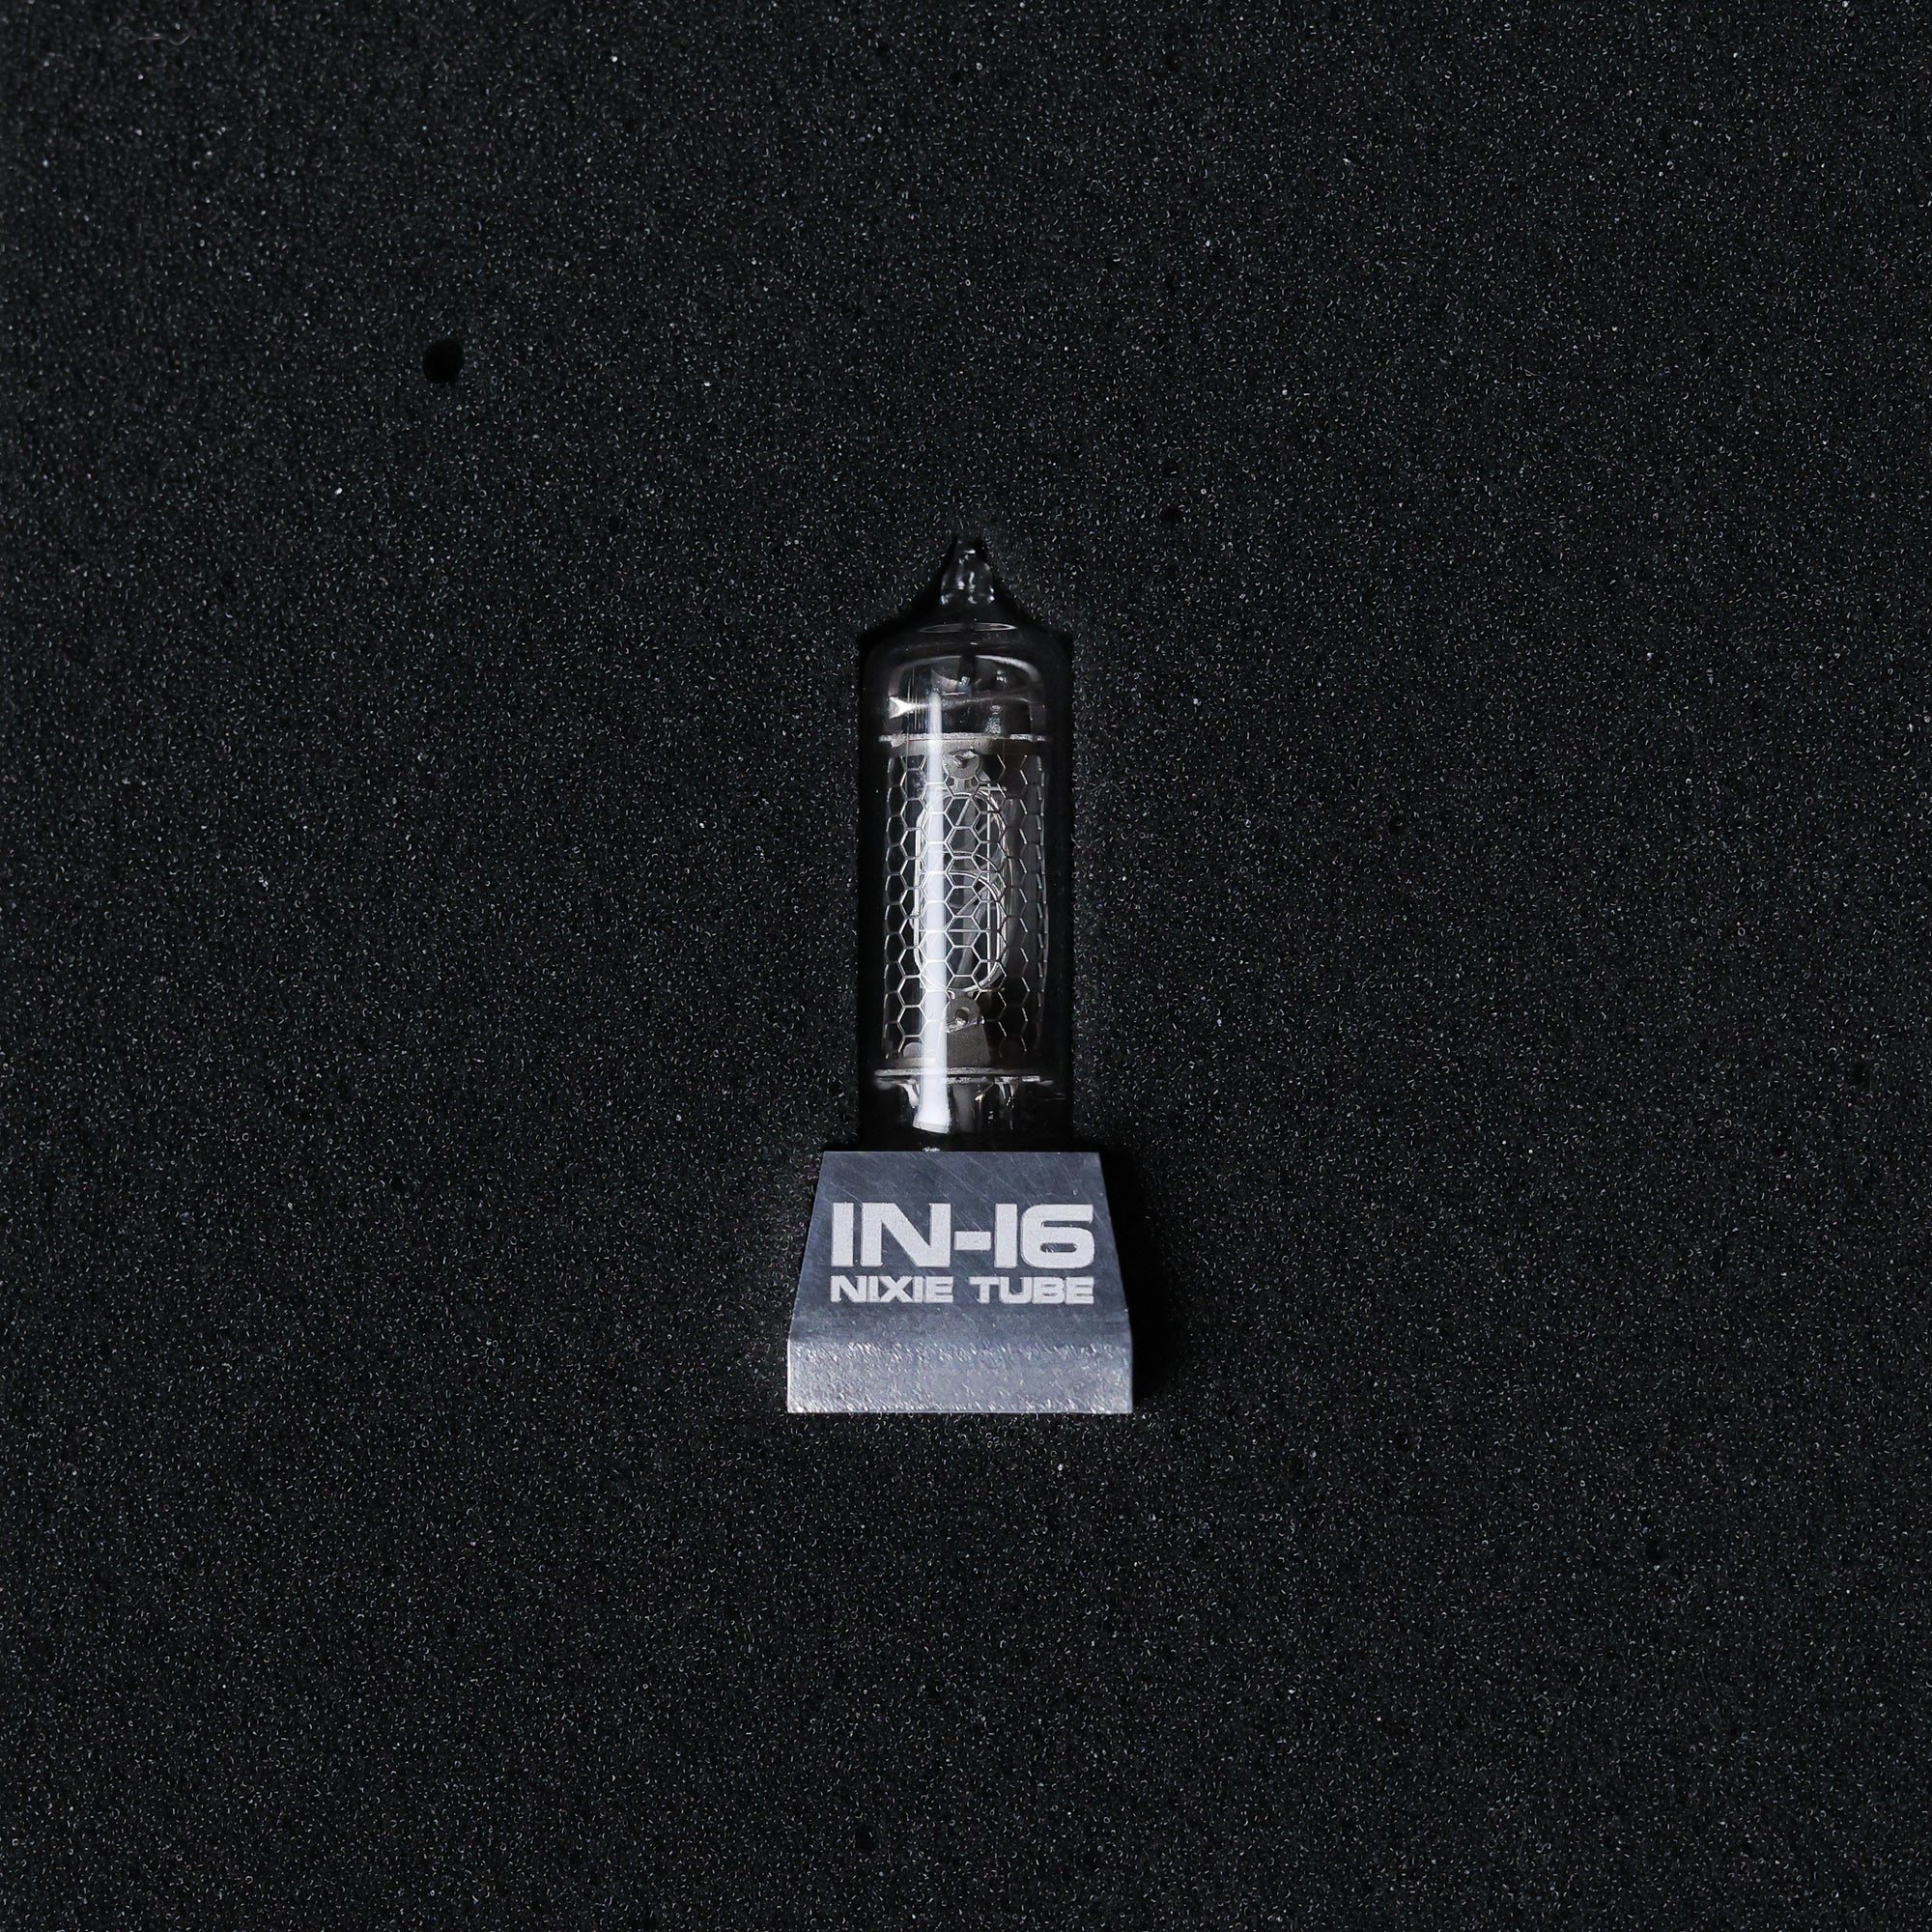 Souvenir "IN-16 NIXIE TUBE"